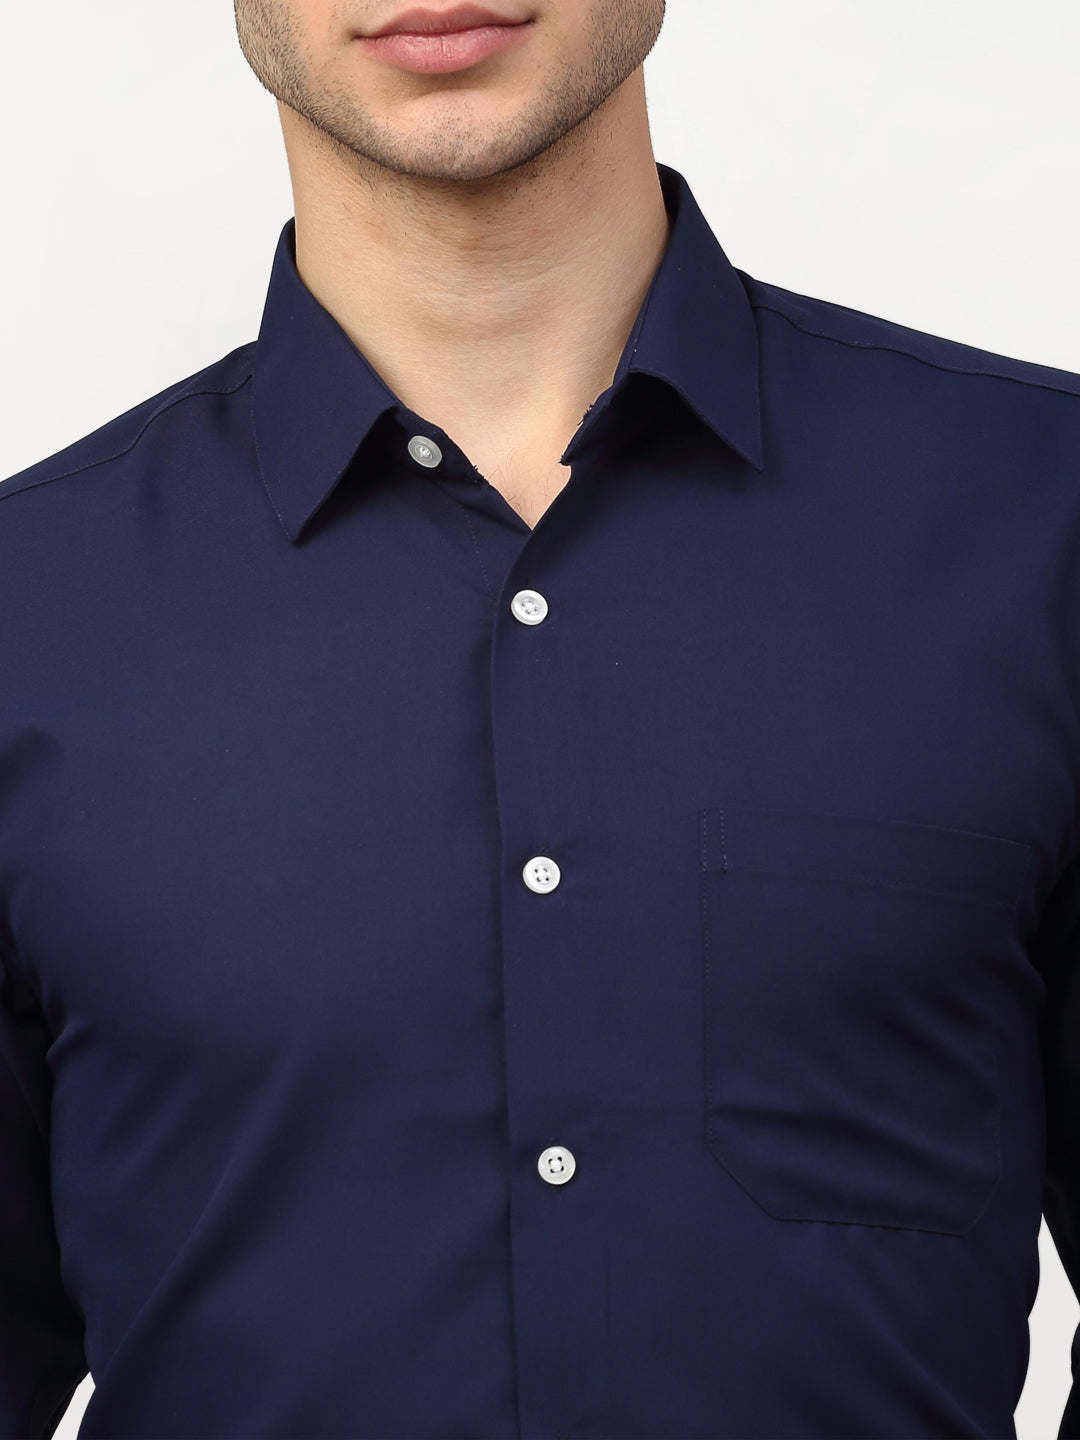 Men's Navy Blue Solid Formal Shirts ( SF 777Navy ) - Jainish